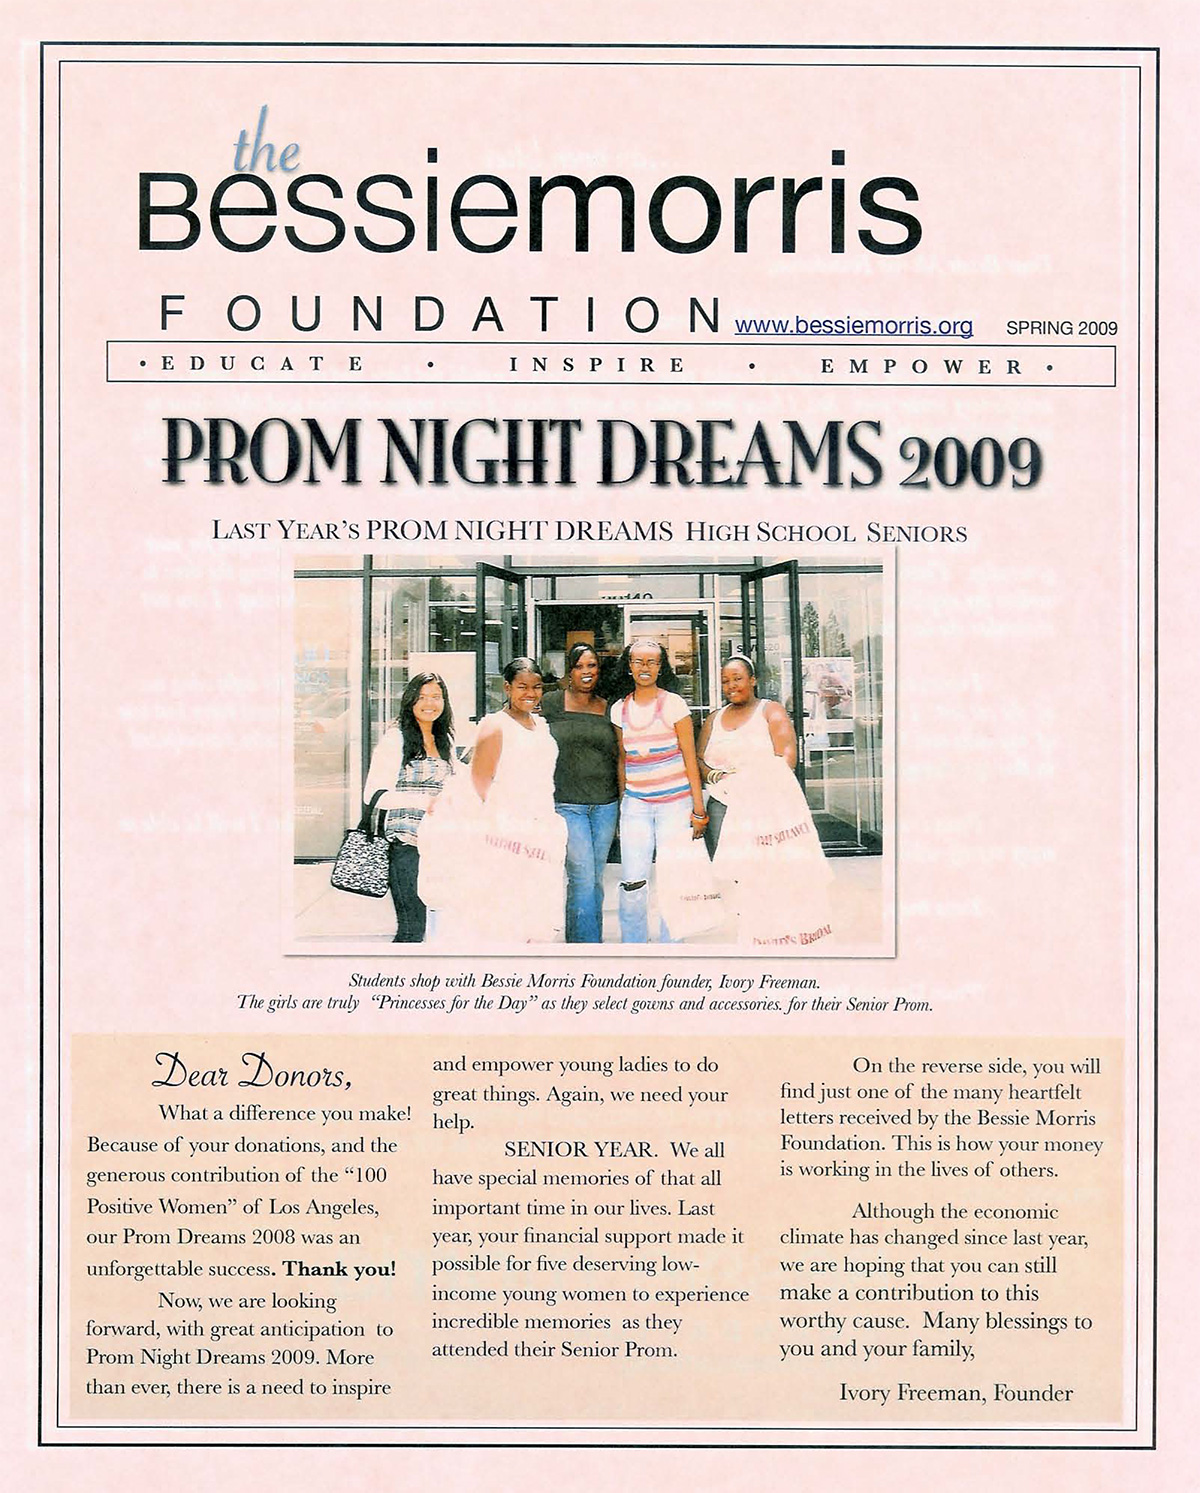 Bessie Morris Foundation newsletter Spring 2009 edition